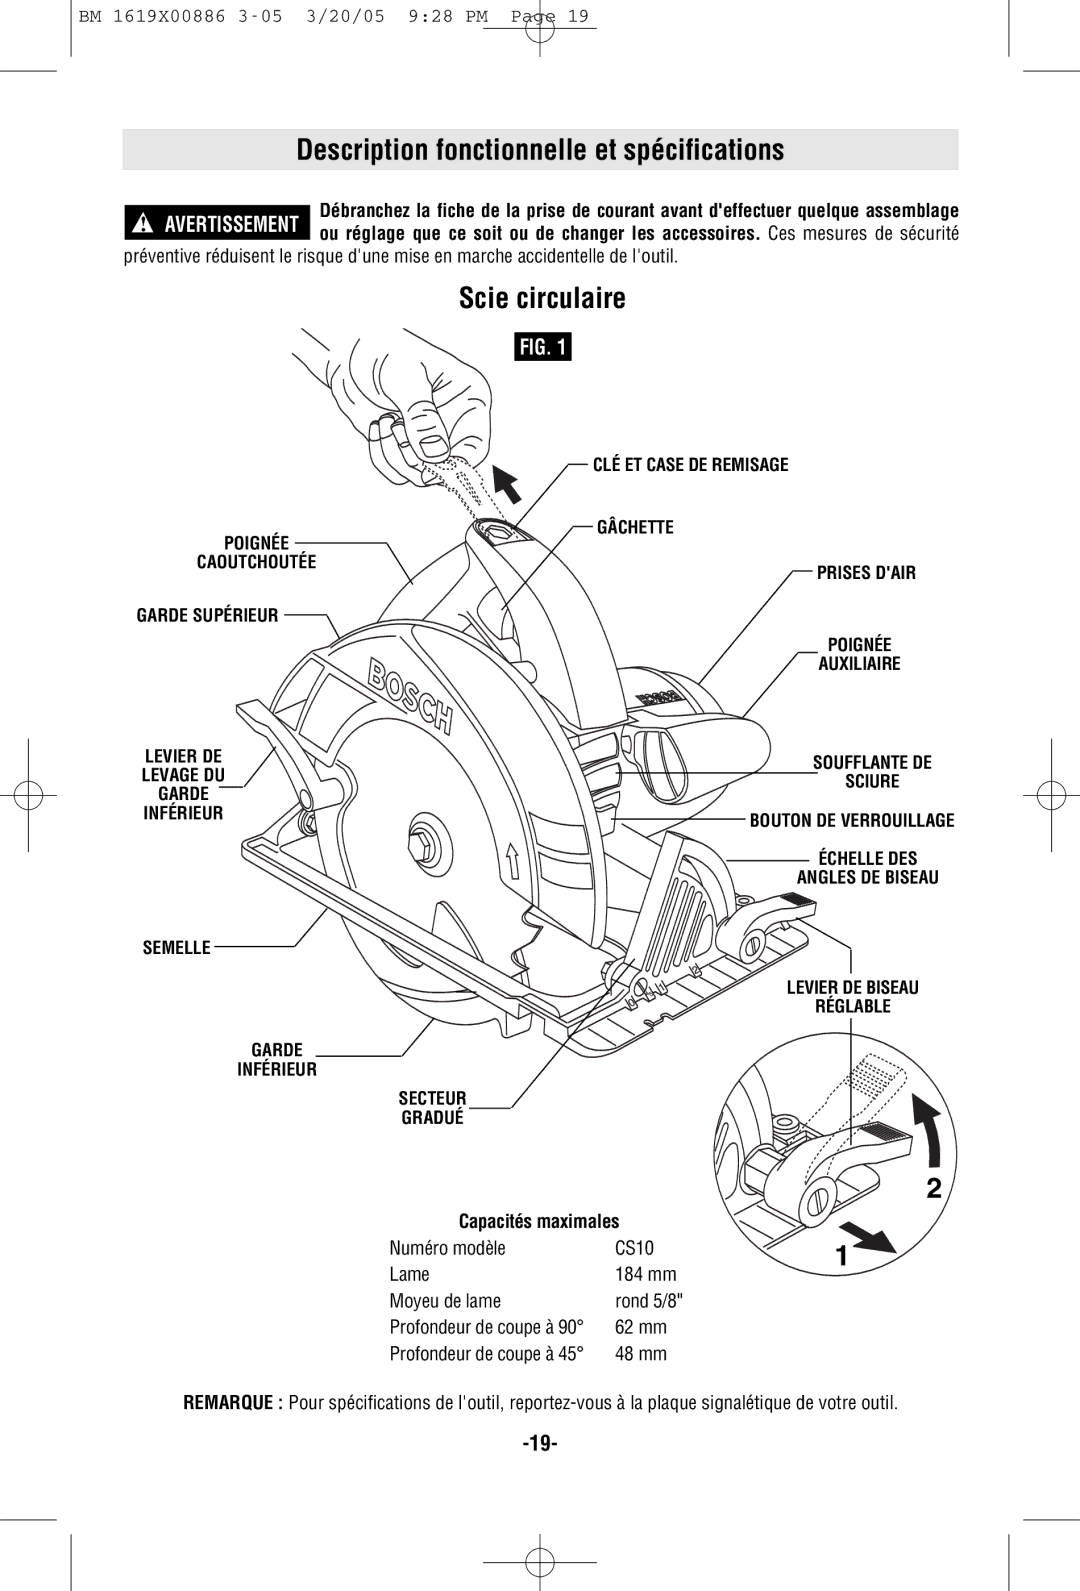 Bosch Power Tools CS10 manual Description fonctionnelle et spécifications, Scie circulaire, Capacités maximales, 62 mm 